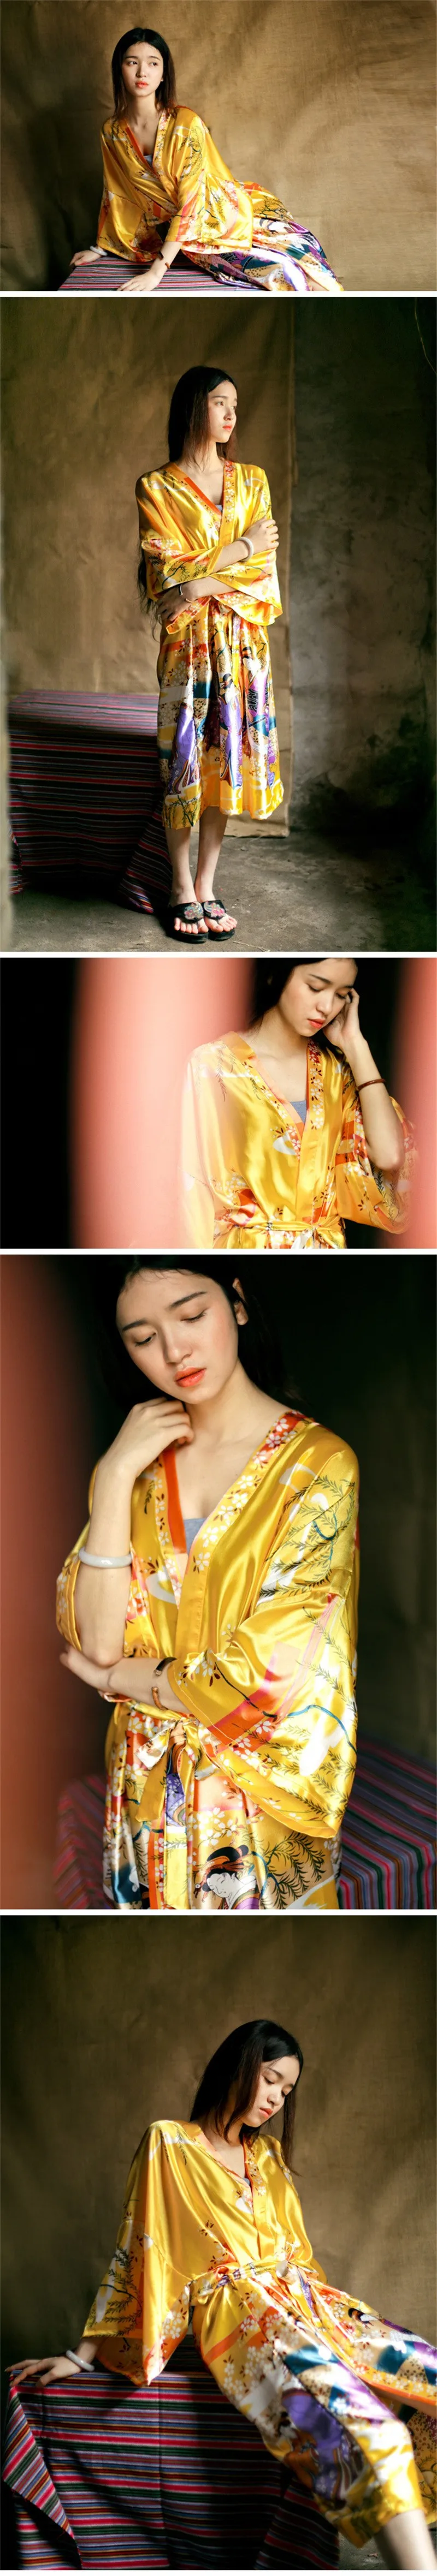 2019 халат Для женщин атласные платья для невест Винтаж кимоно с цветочным принтом Халат домашний халат желтый свадебные халаты # P144